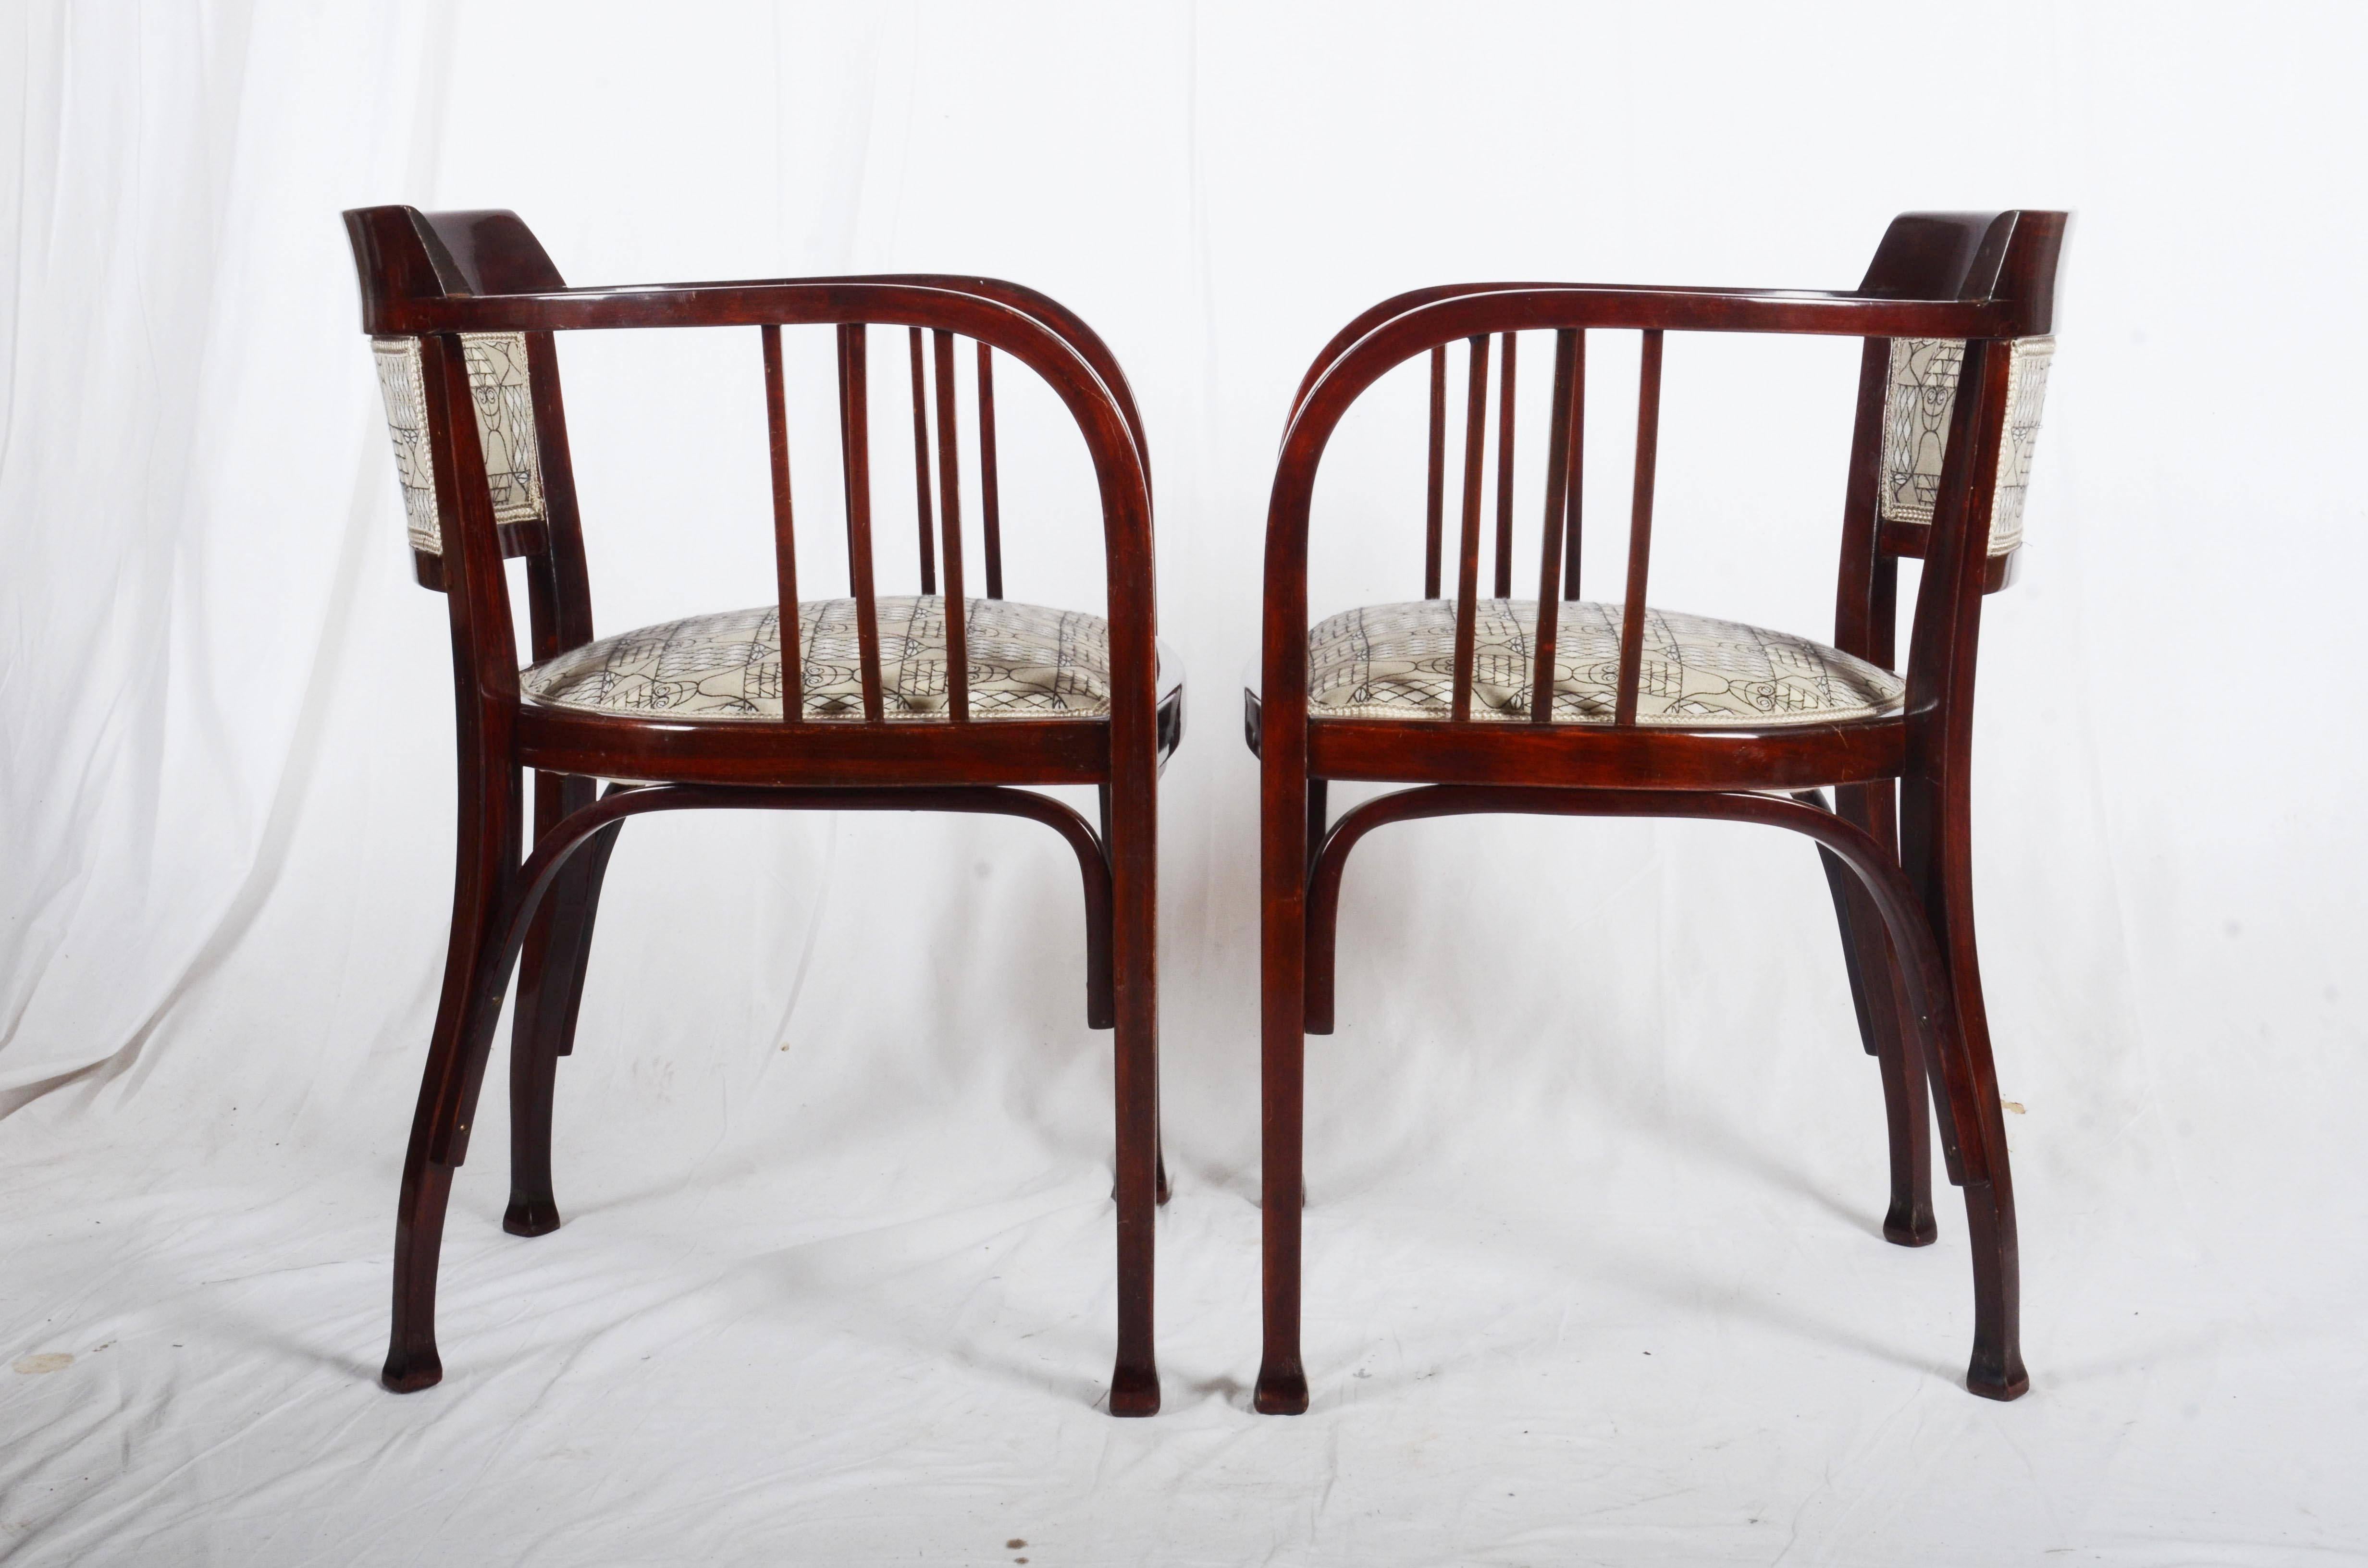 Conception de bois courbé de plage par Otto Wagner vers 1900
Le tissu des chaises est obsolète mais je peux vous proposer une large gamme de tissus Vienna Secession à la place.
Délai de livraison 5-6 semaines

 